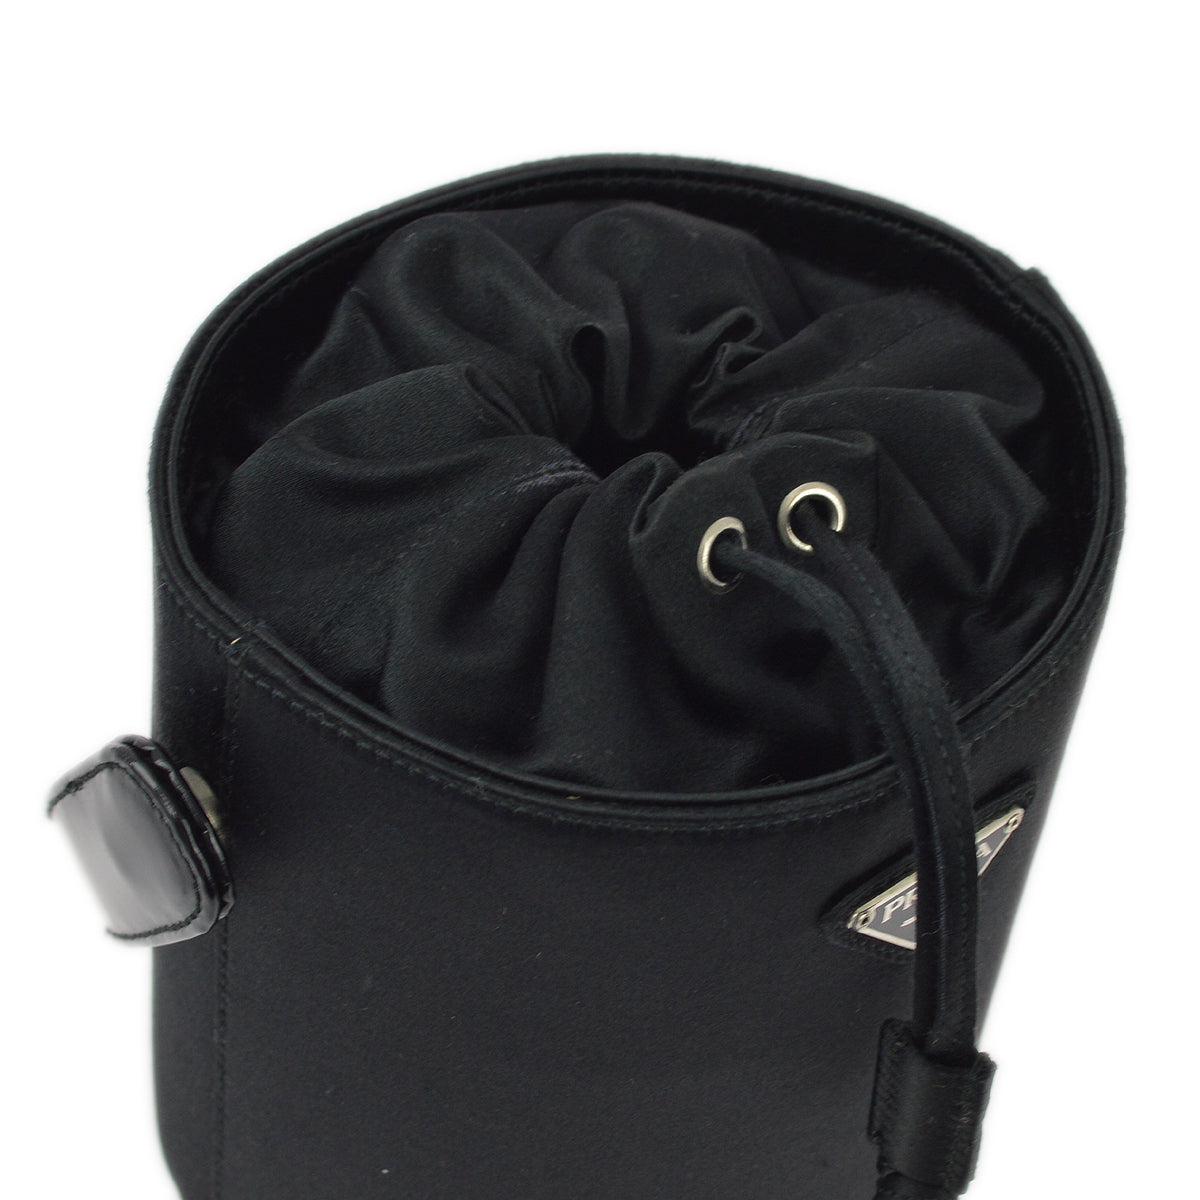 Prada Black Satin Handbag